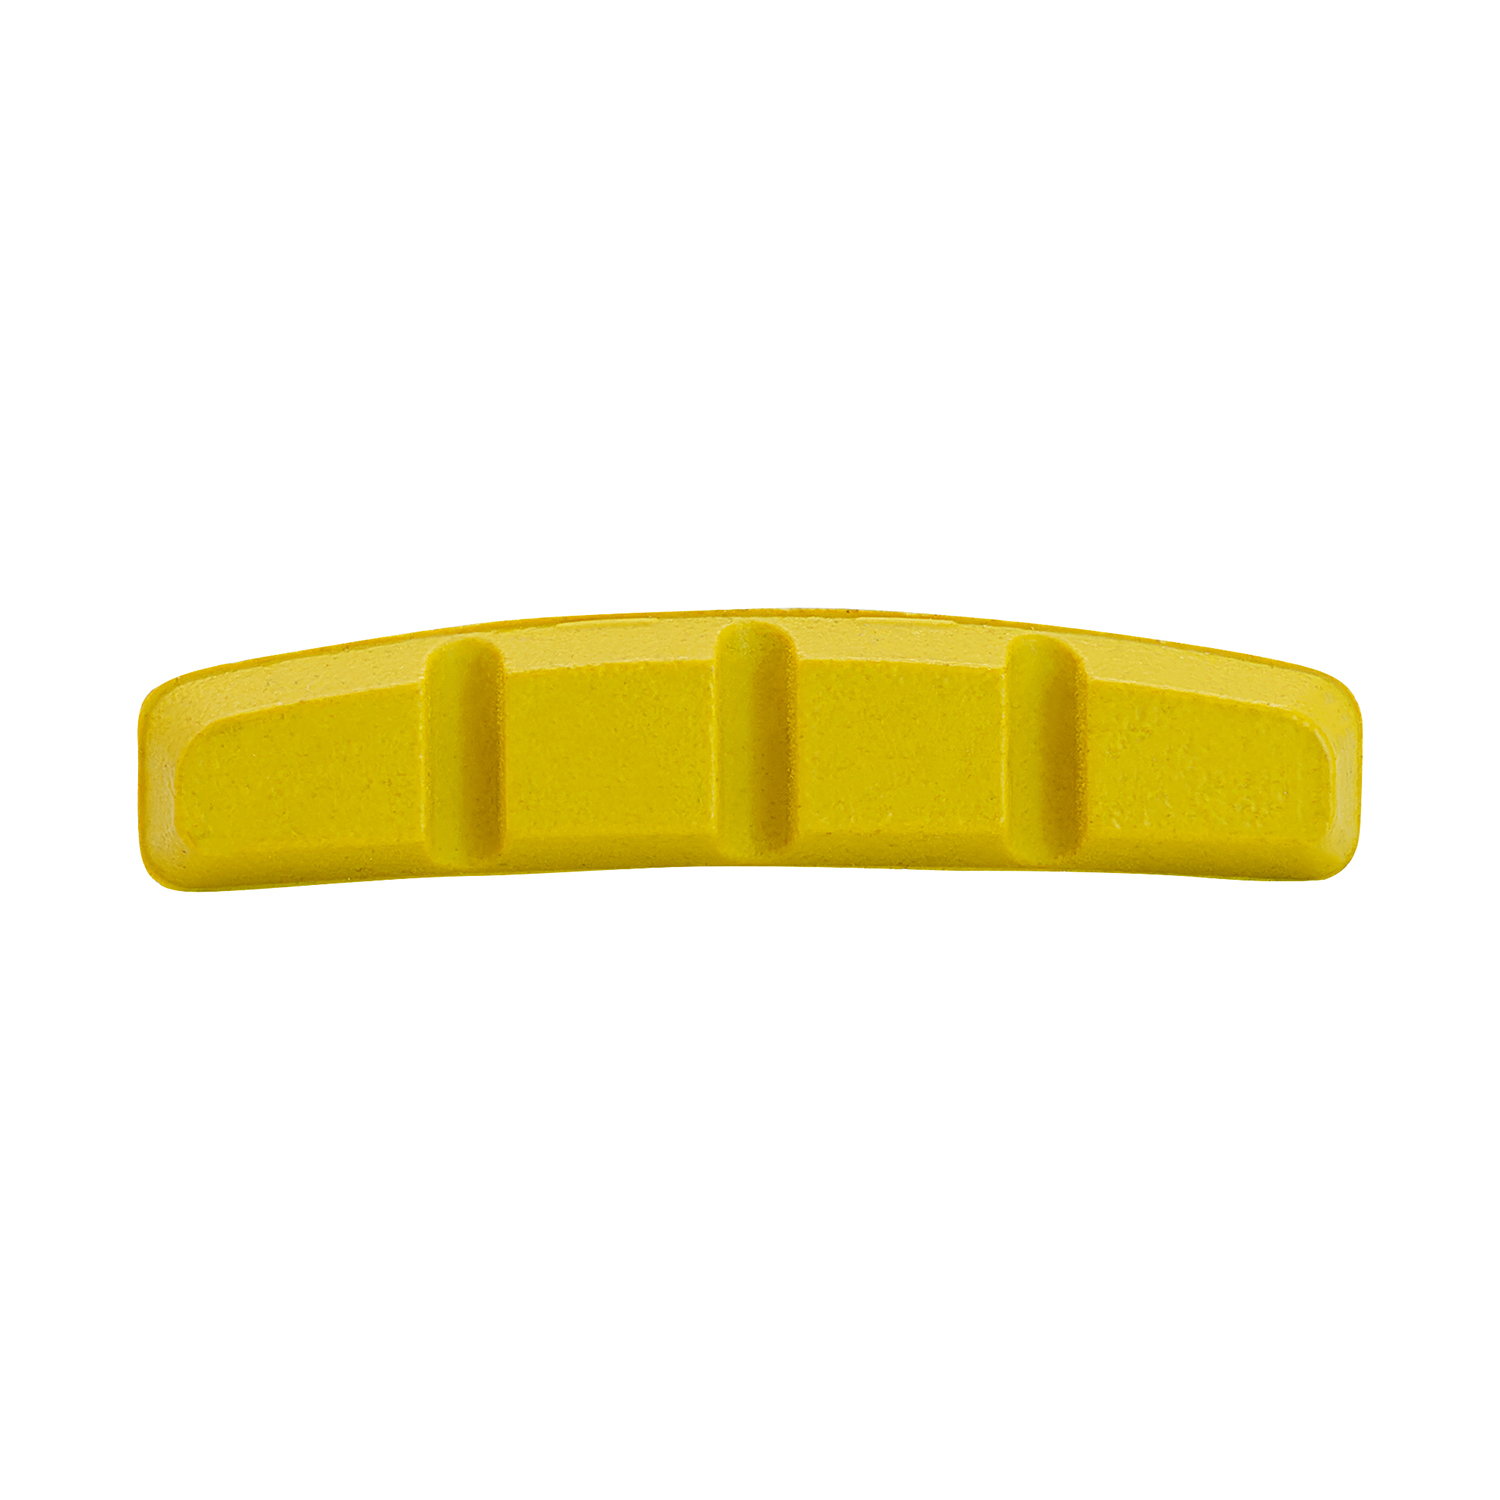 Bremsschuhe V-Brake SYMMETRISCH 70 mm, 1TC in gelb, 1 Paar, SB verpackt